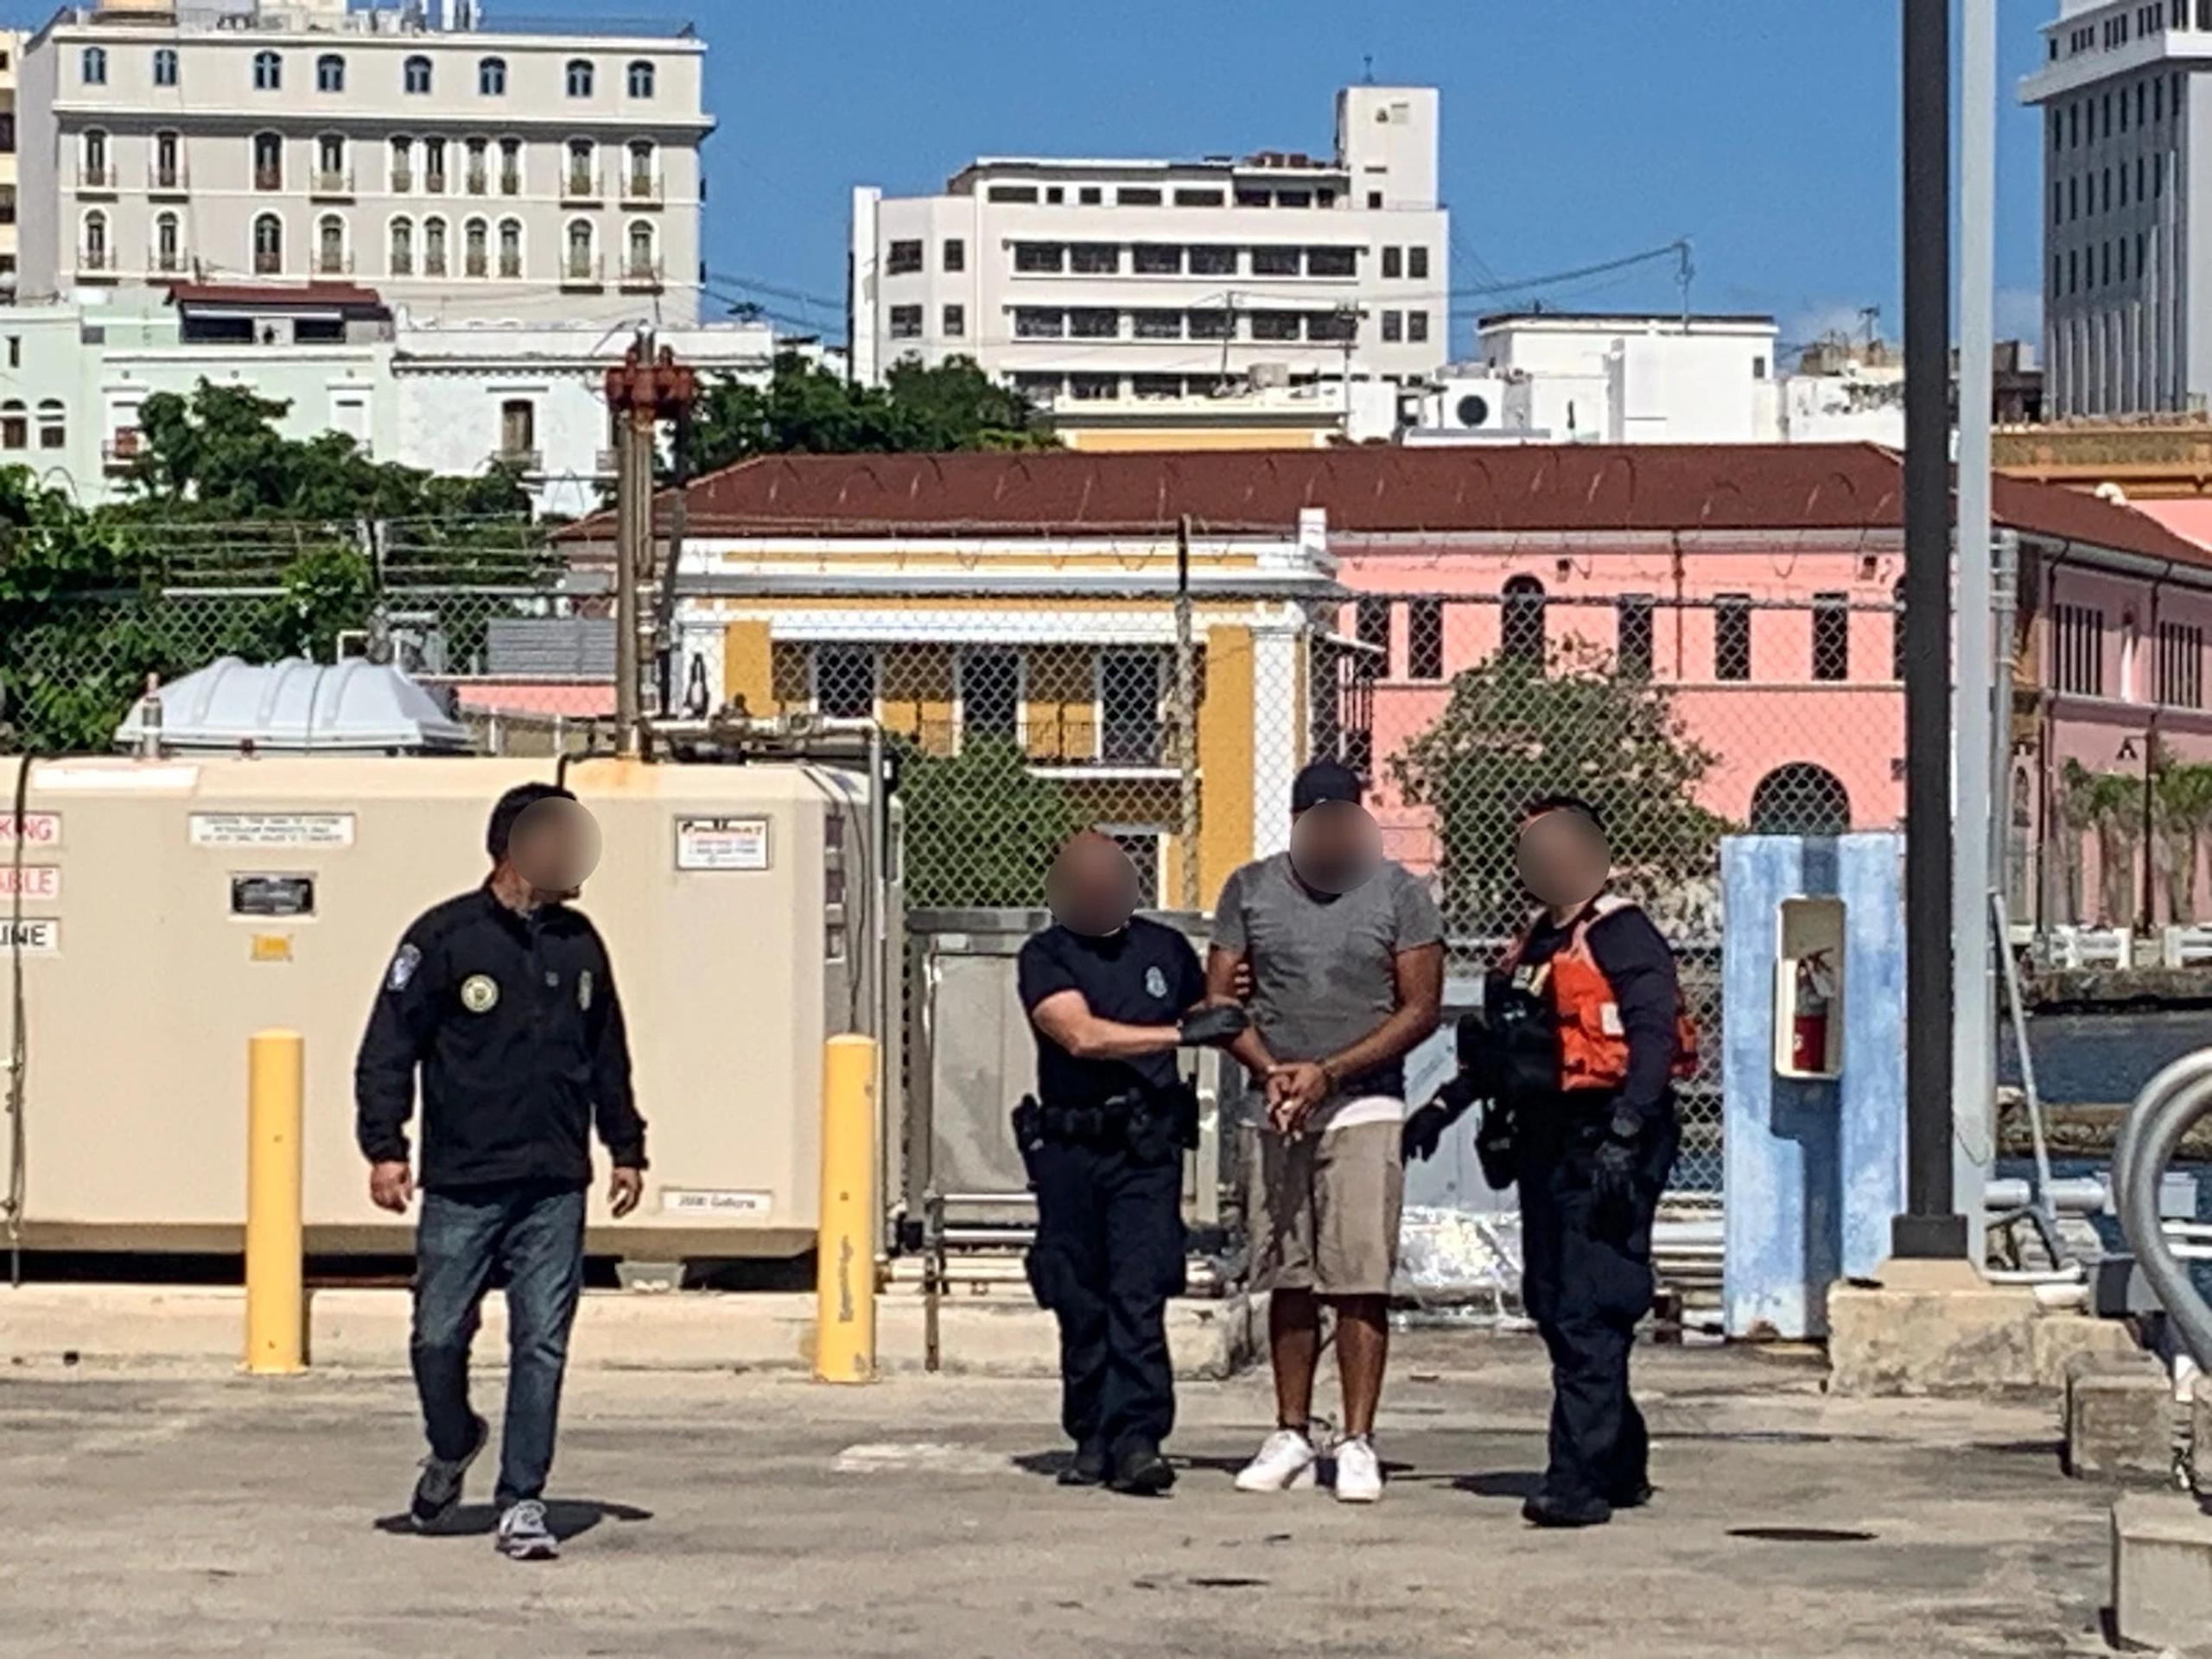 La Guardia Costera y el Negociado de Aduanas y Protección Fronteriza lograron detener a unos 12 polizones que se encontraban dentro de una barcaza que entraba al Puerto de San Juan.